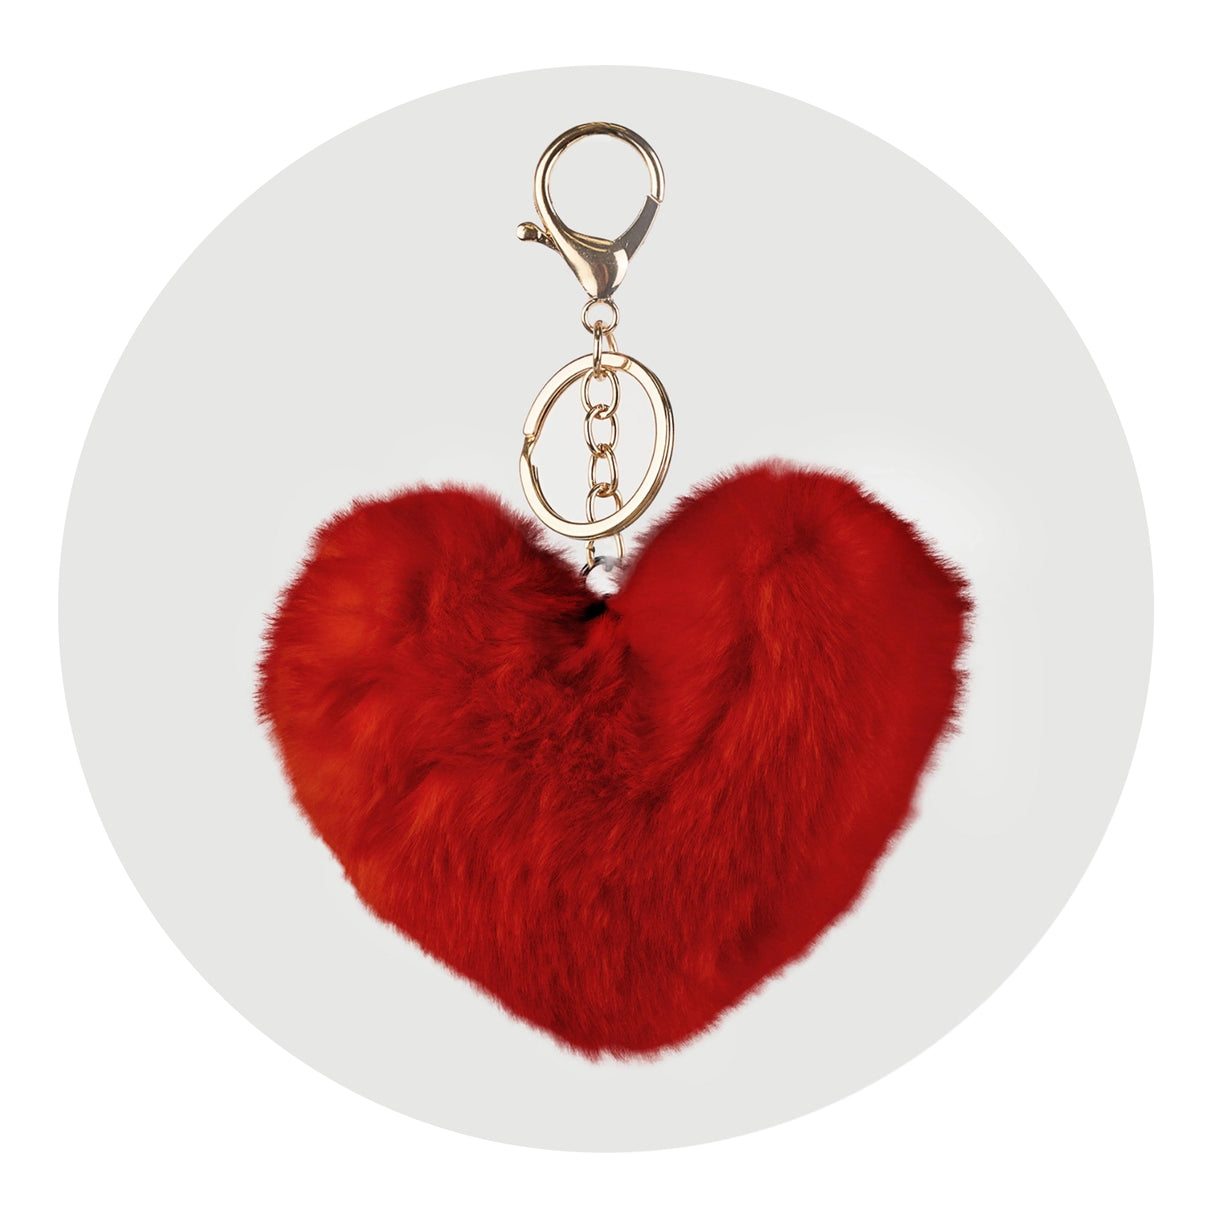 Pom Pom Heart Key Chain - Red